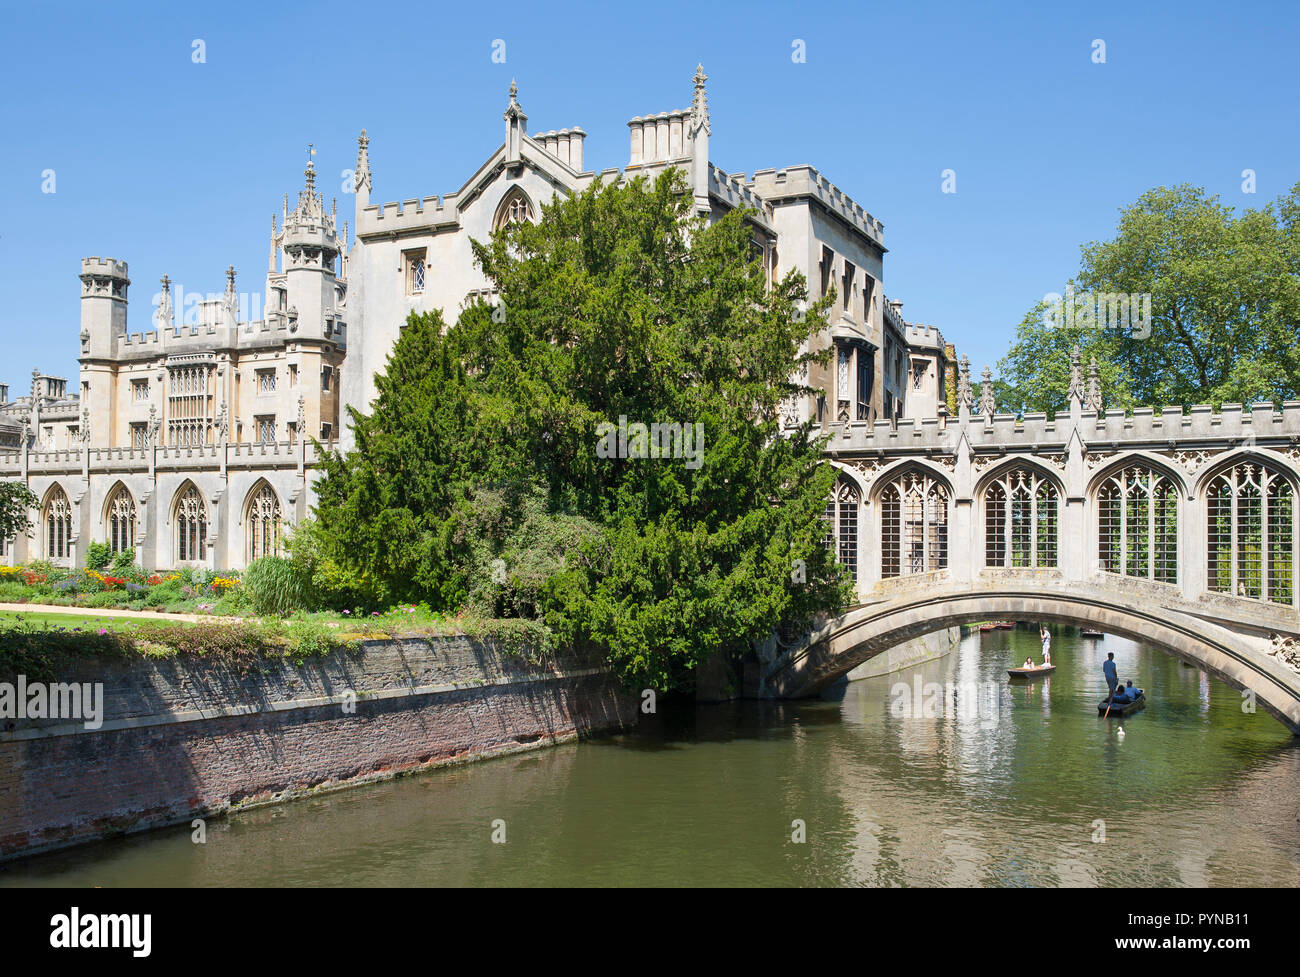 Promenades en barque sur la rivière Cam à St John's College de Cambridge Banque D'Images